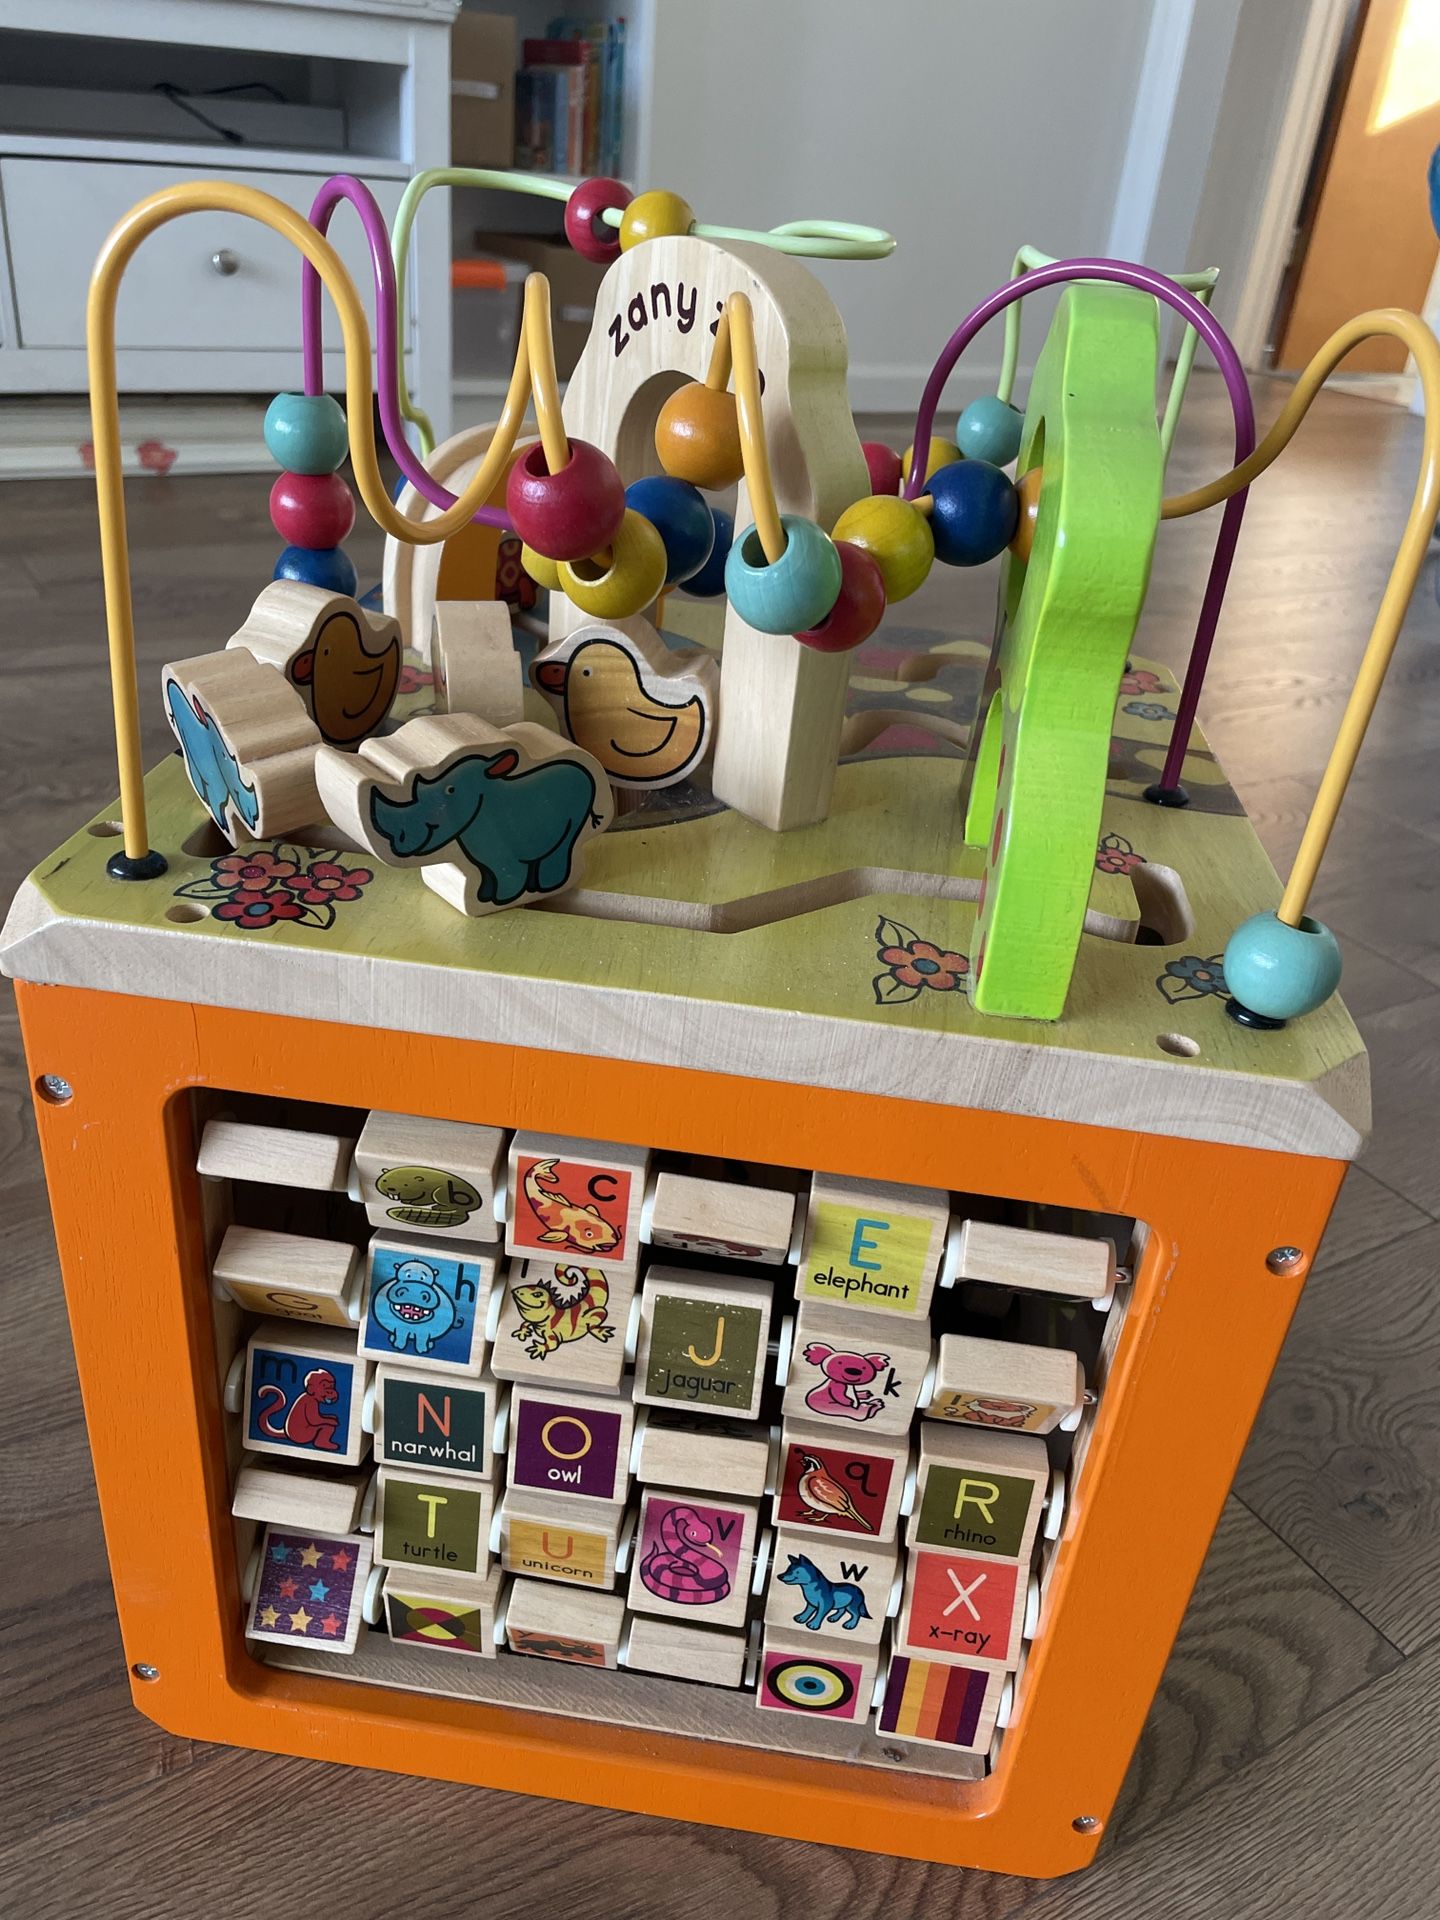 toys Wooden Activity Cube - Zany Zoo